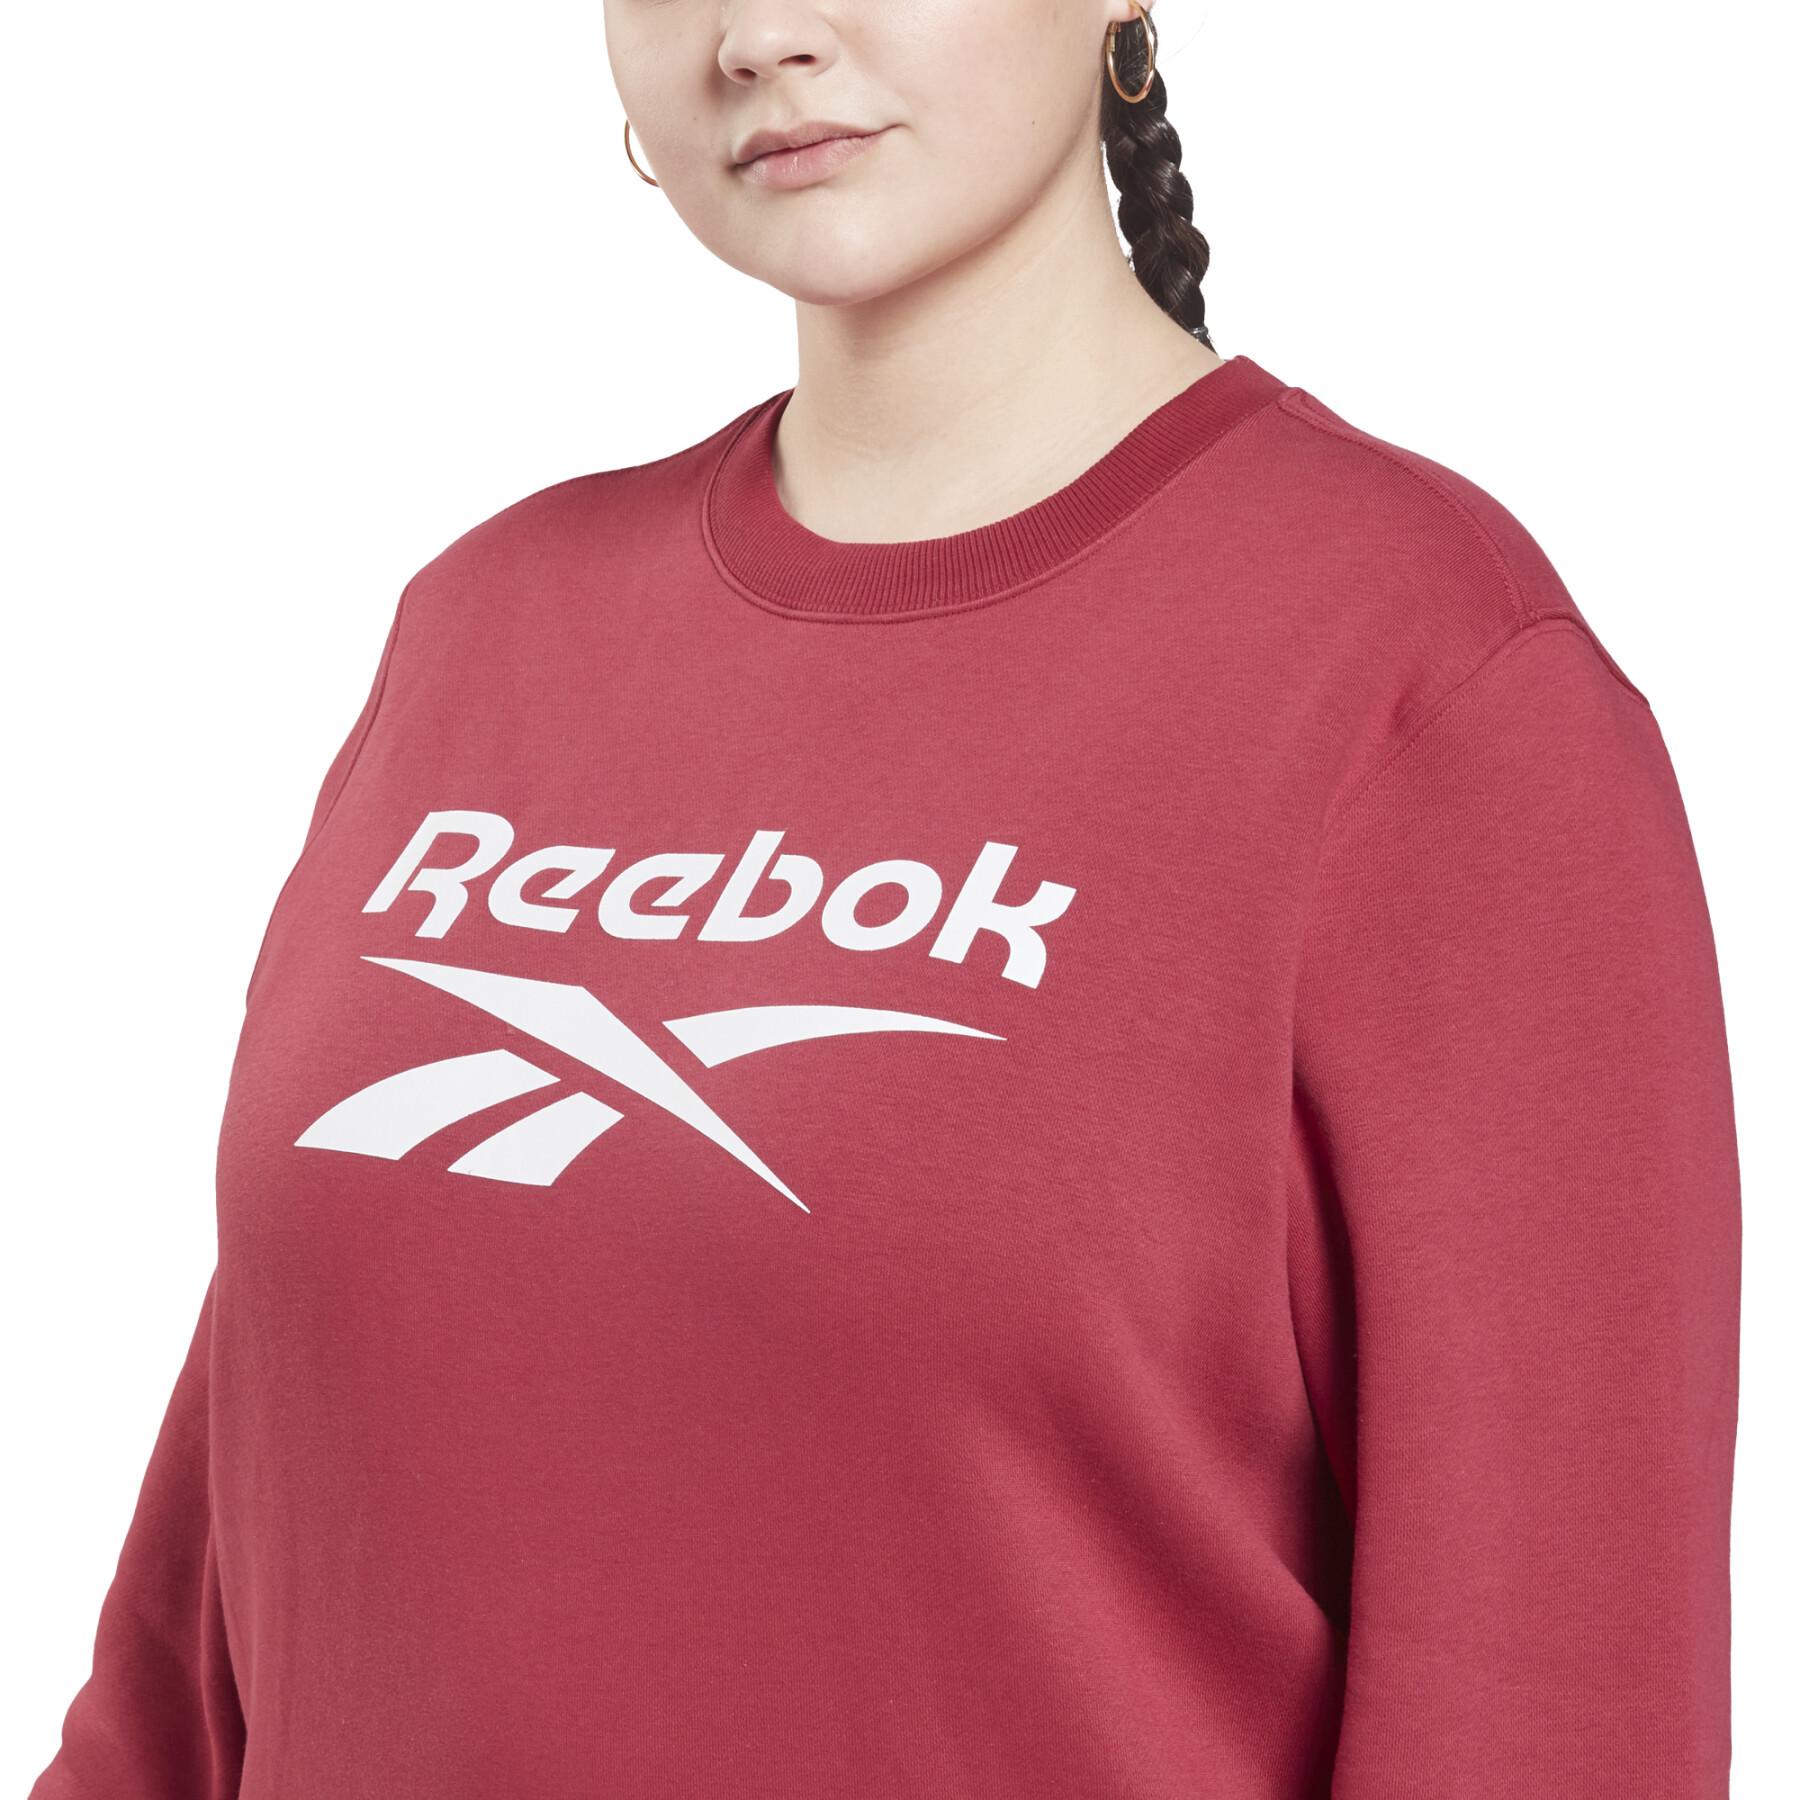 Women's identity logo fleece round neck sweatshirt (large sizes)